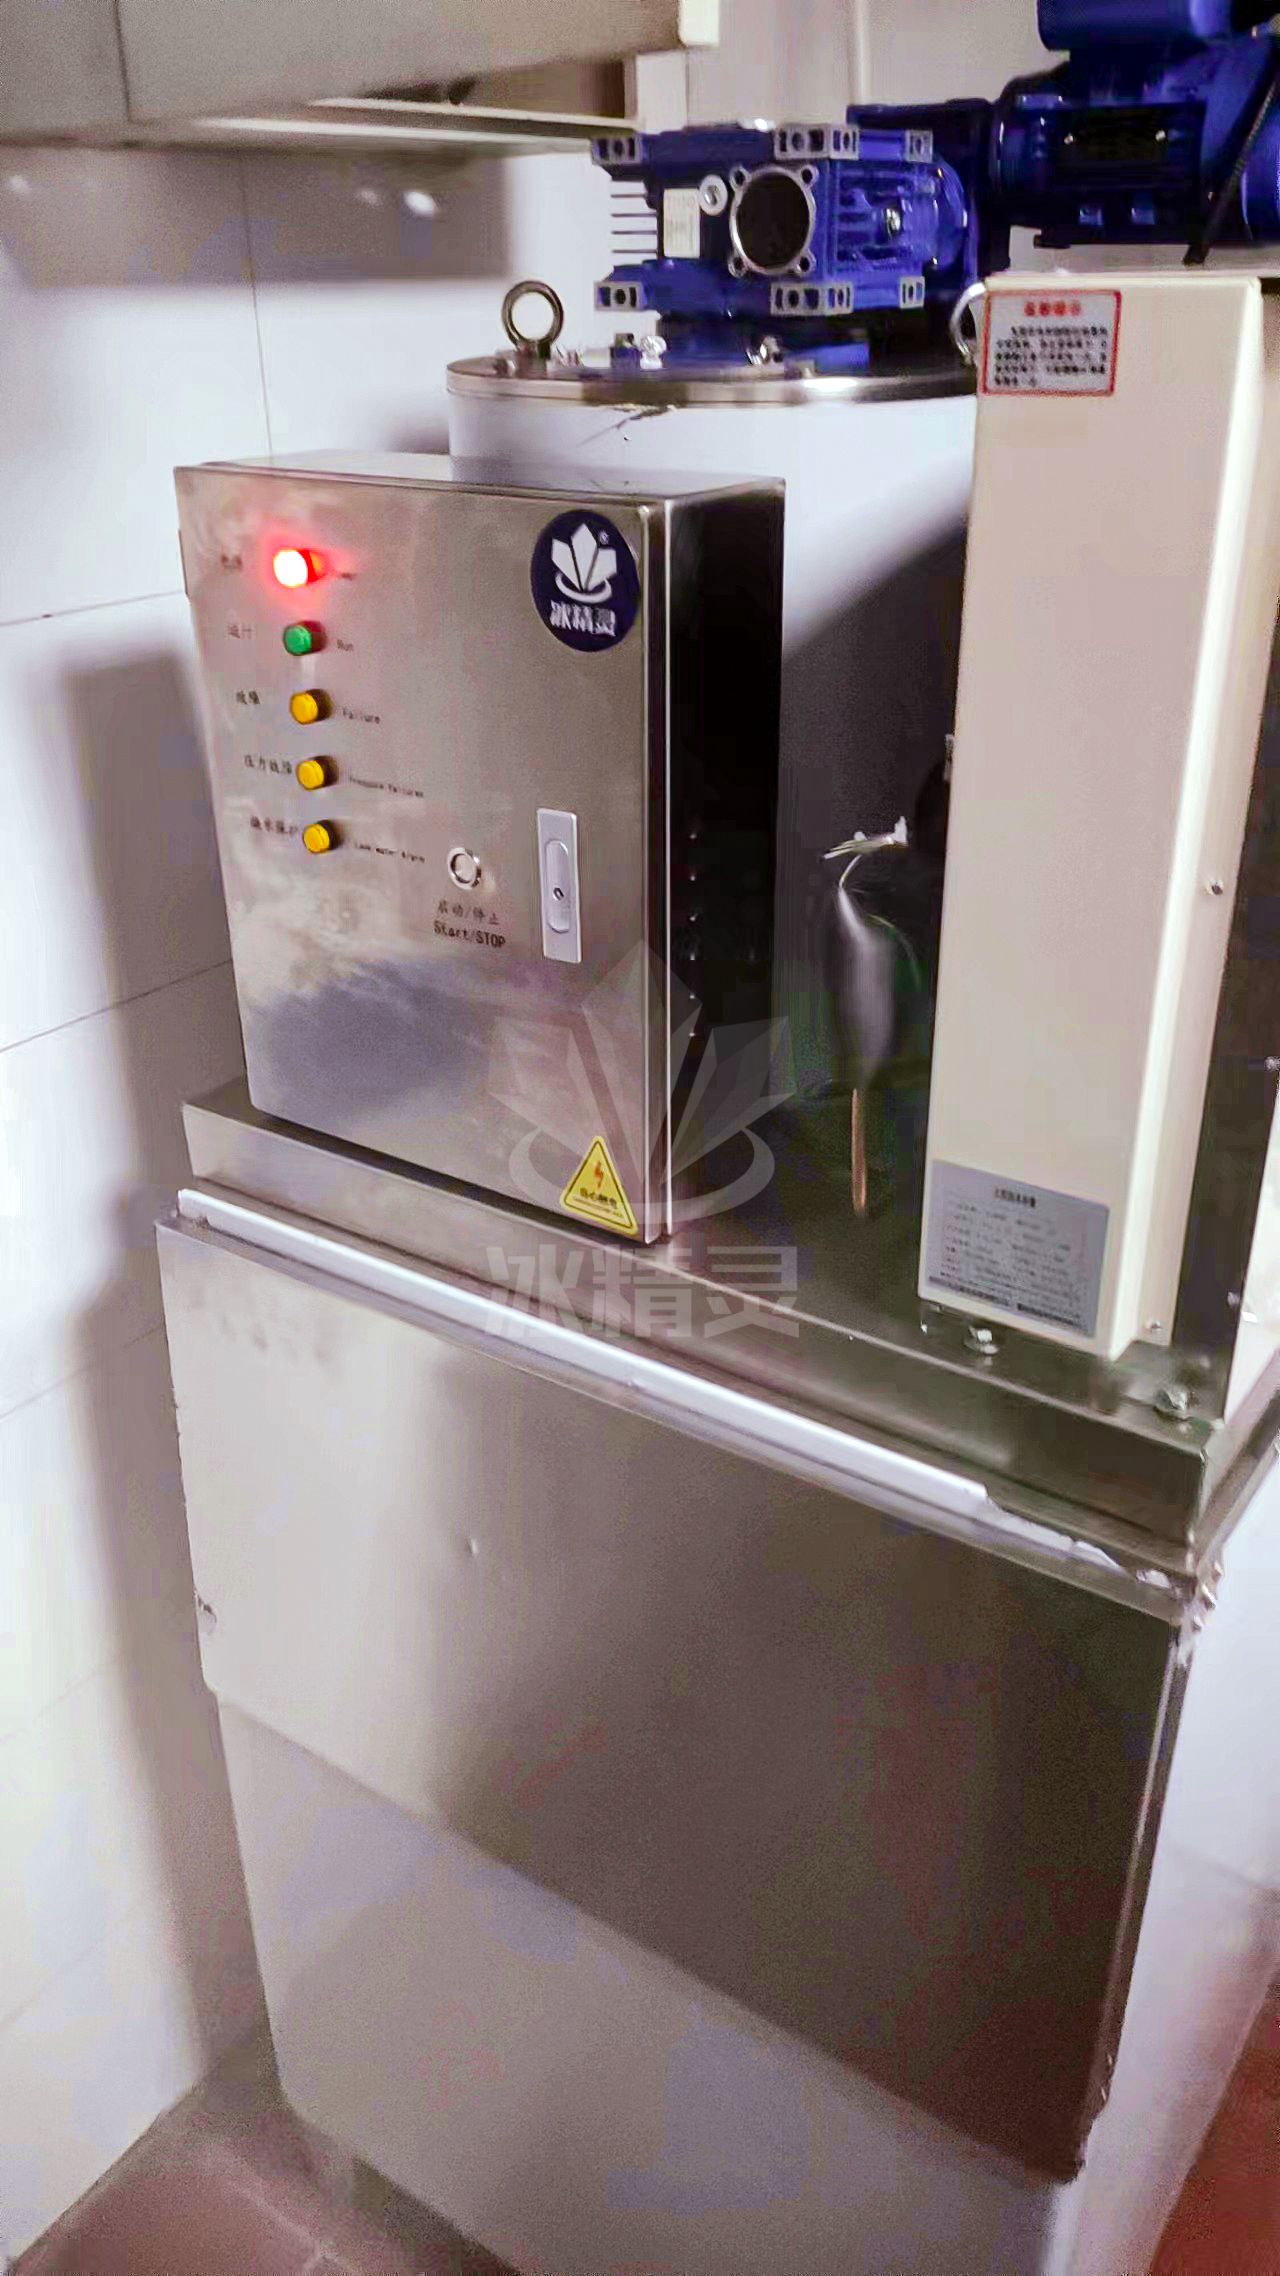 日产量300公斤片冰机已交付内蒙古自治区锡林郭勒盟 锡林浩特市《西贝餐饮》